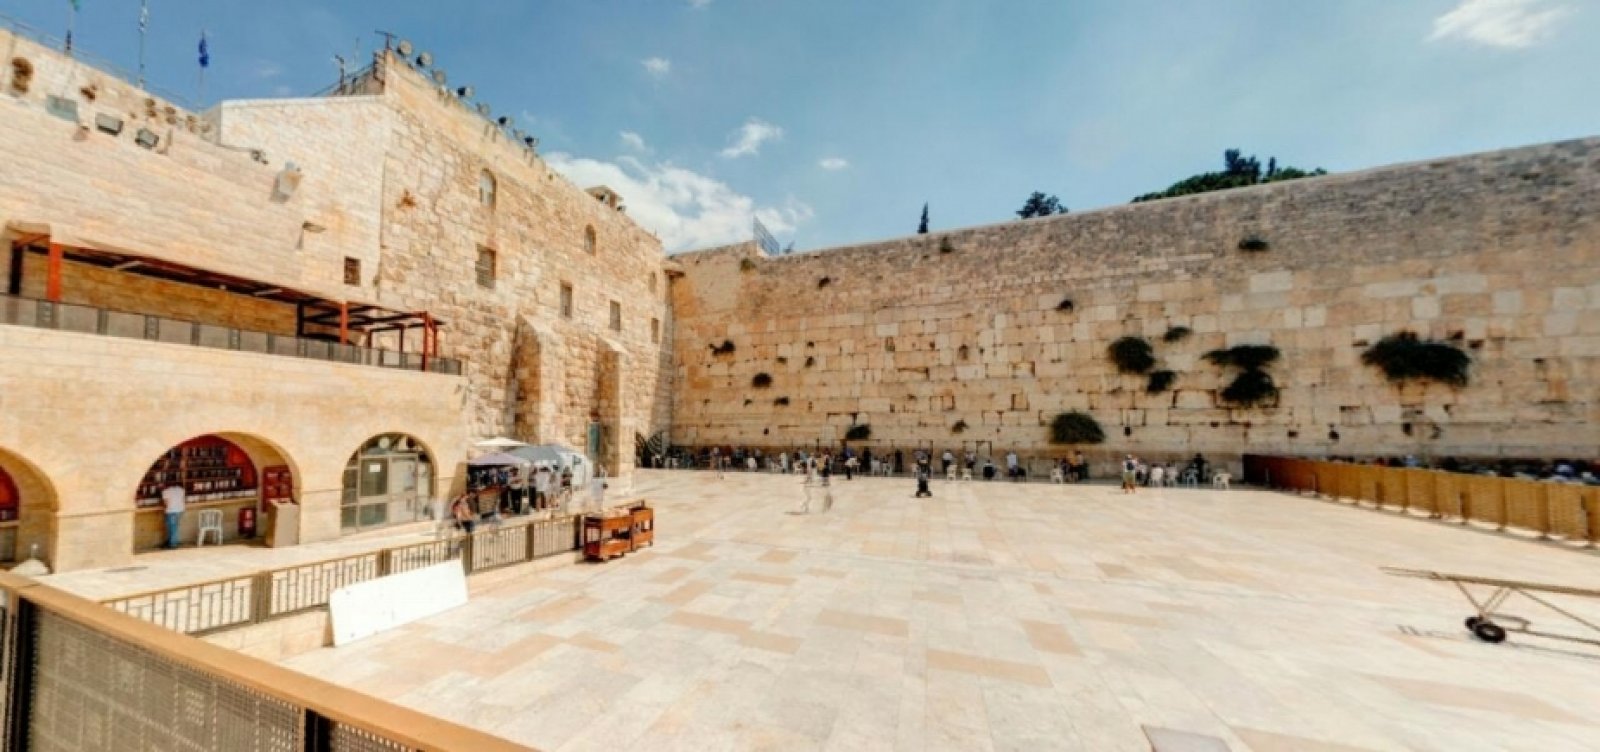 Ataque a tiros deixa ao menos 3 mortos em Jerusalém